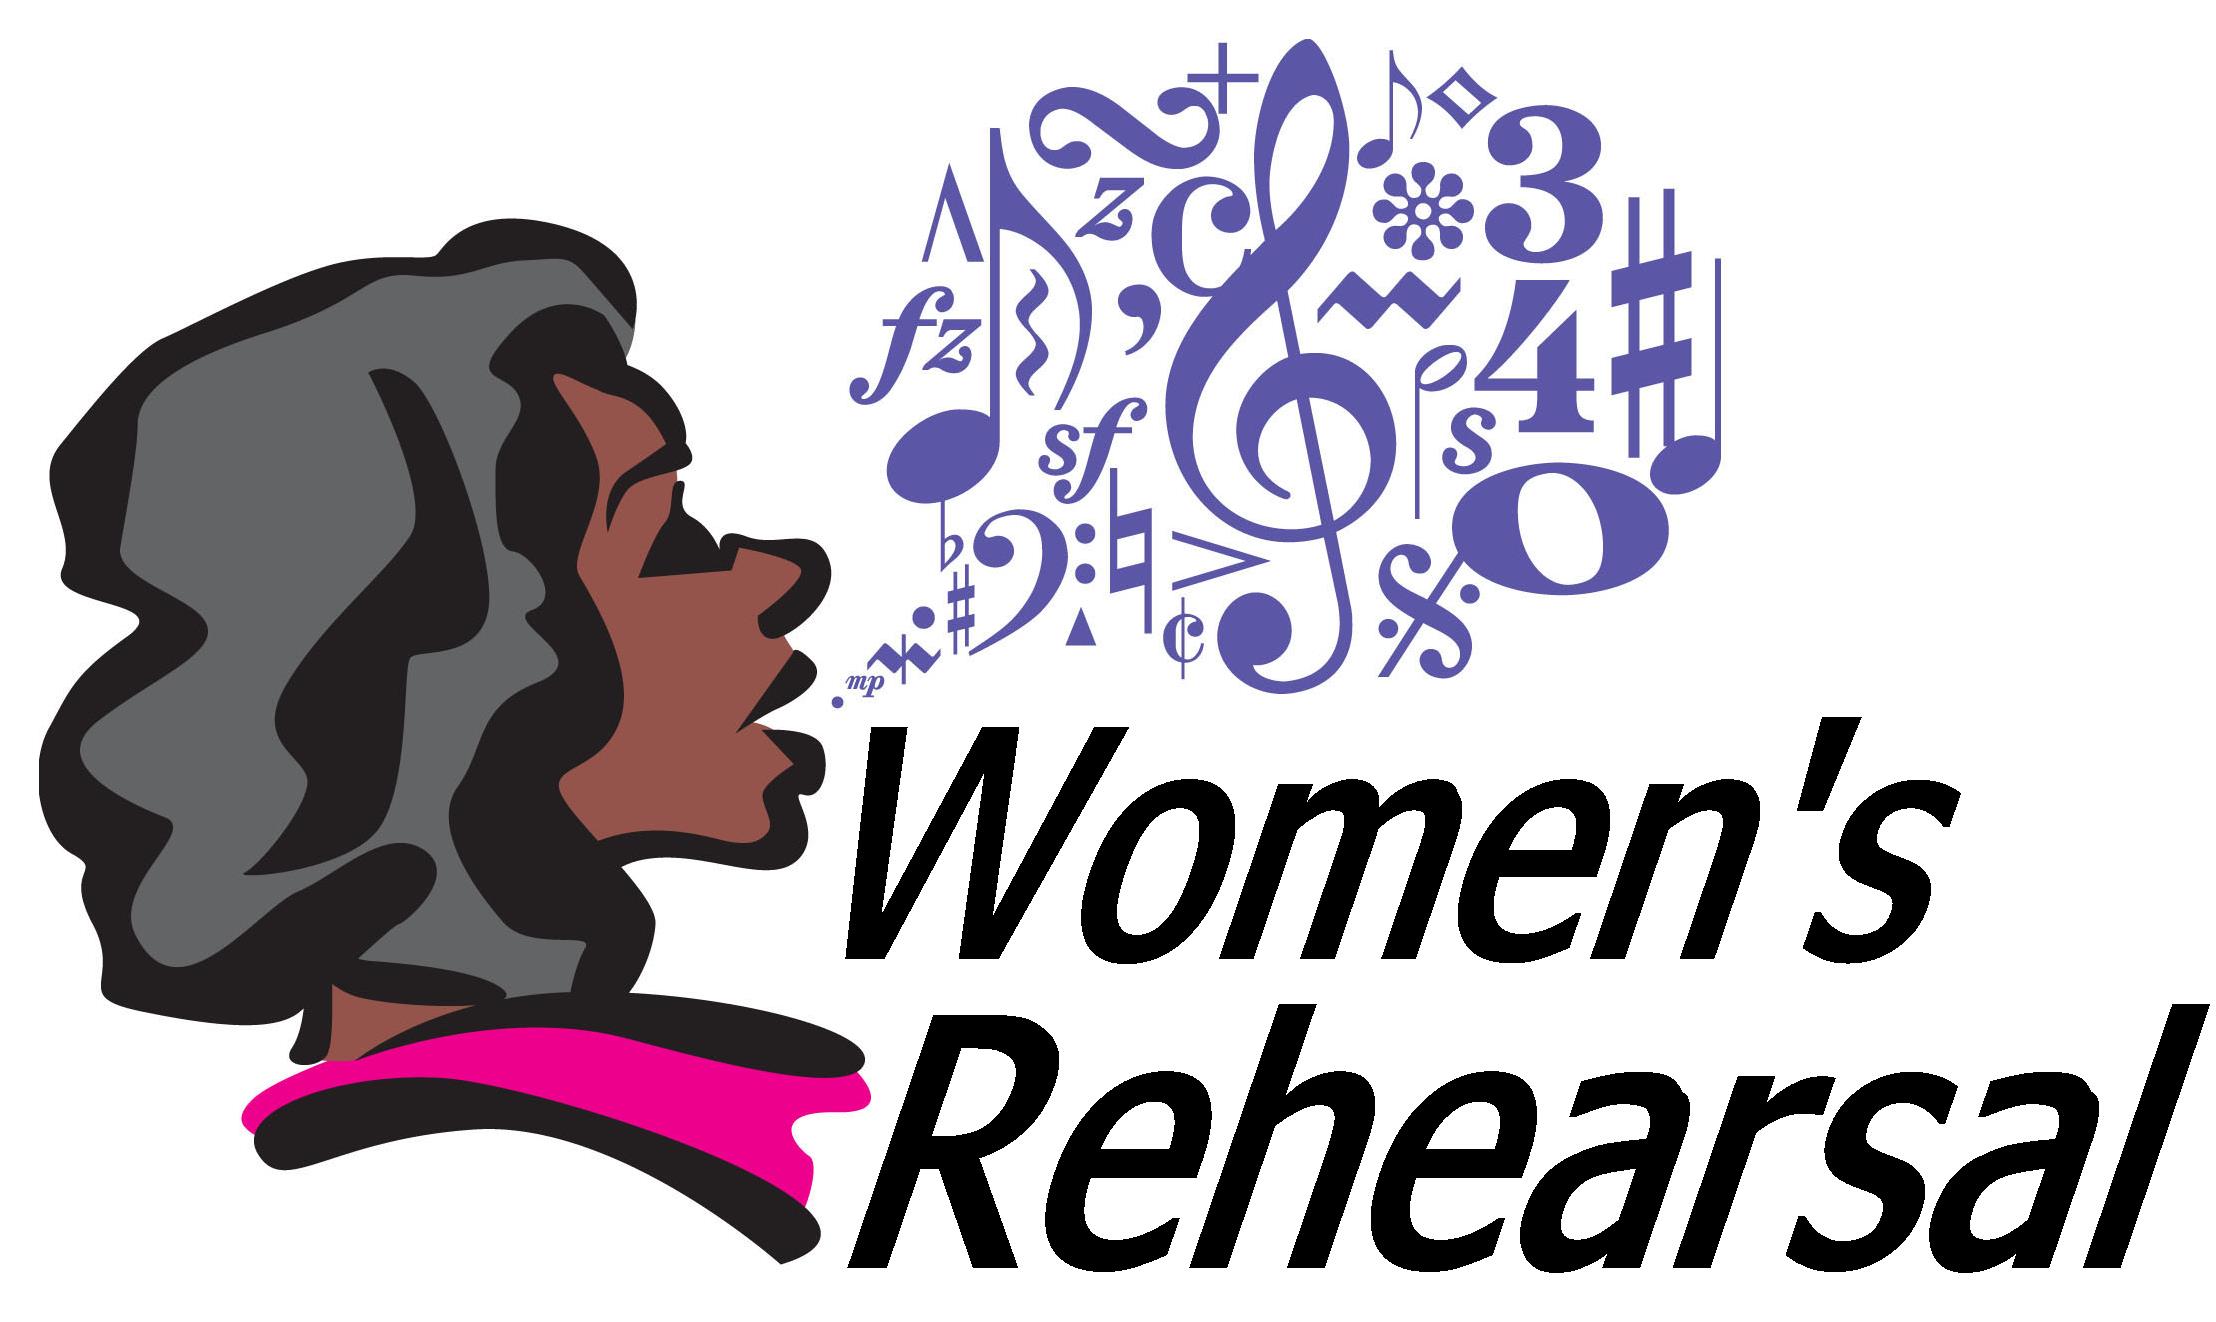 choir clipart women's